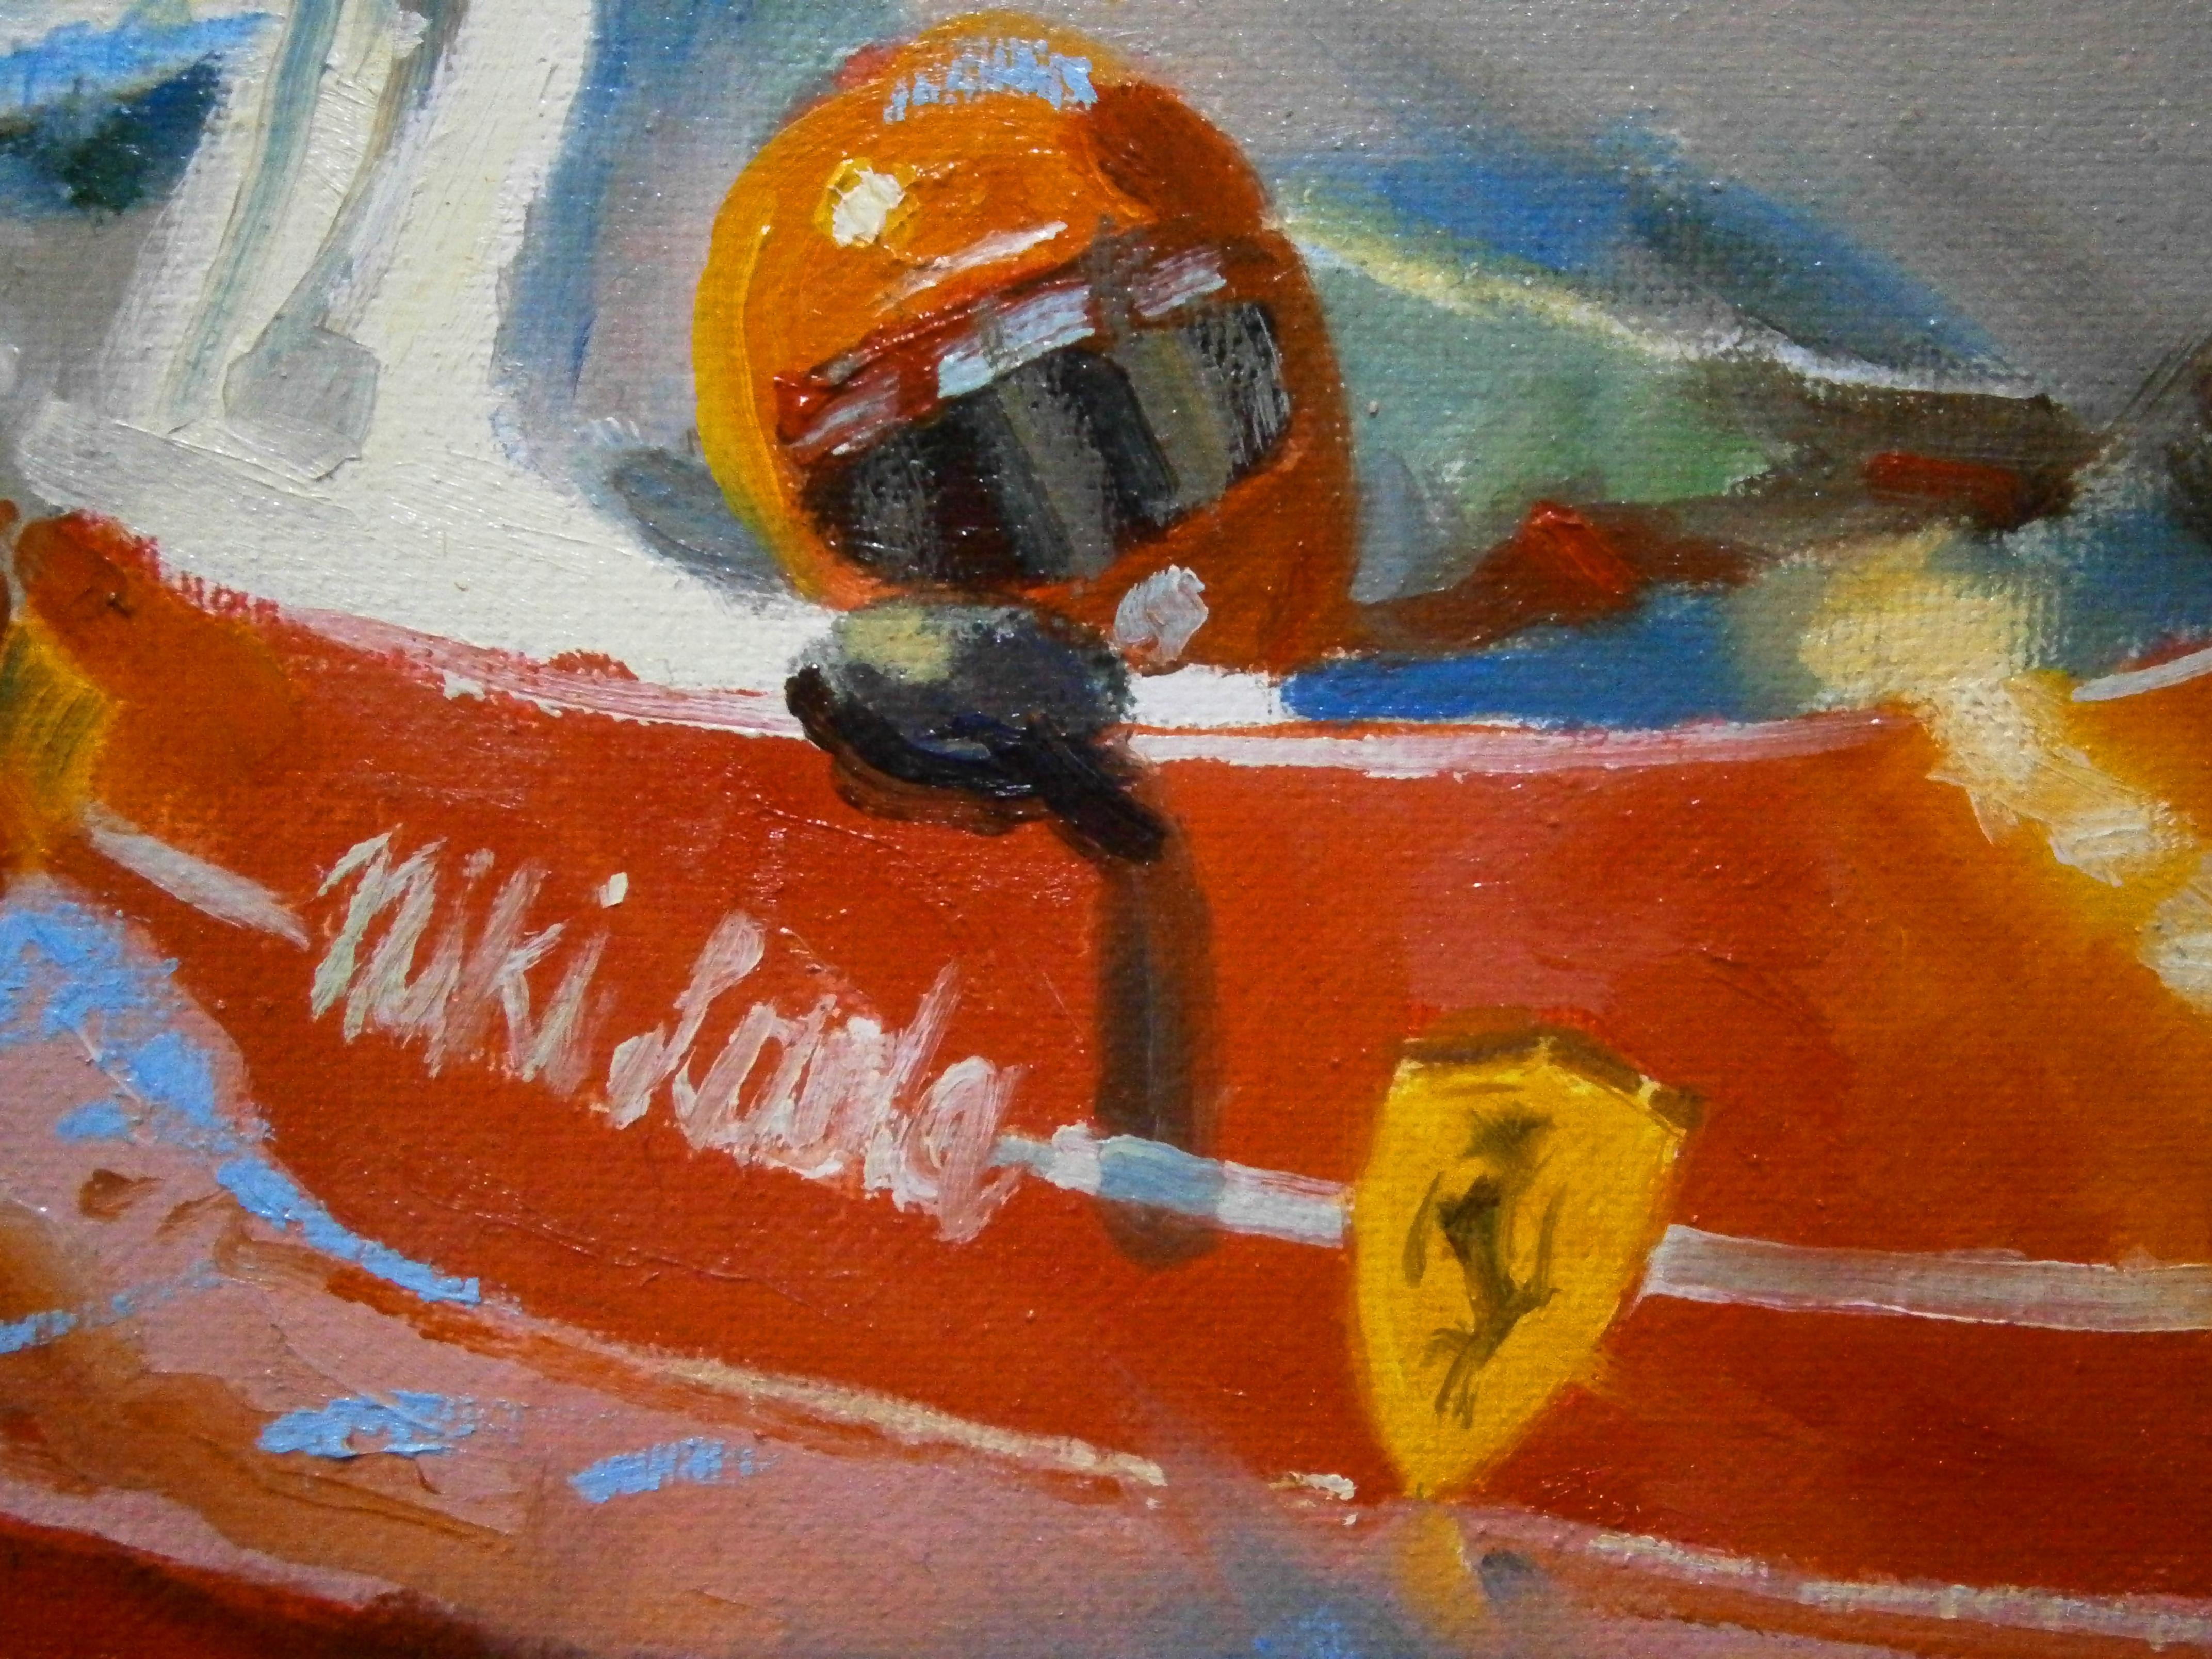 Balaguer Car Races 201 Niki Lauda. Ferrari 312Toriginal painting - Contemporary Painting by Alex BALAGUER